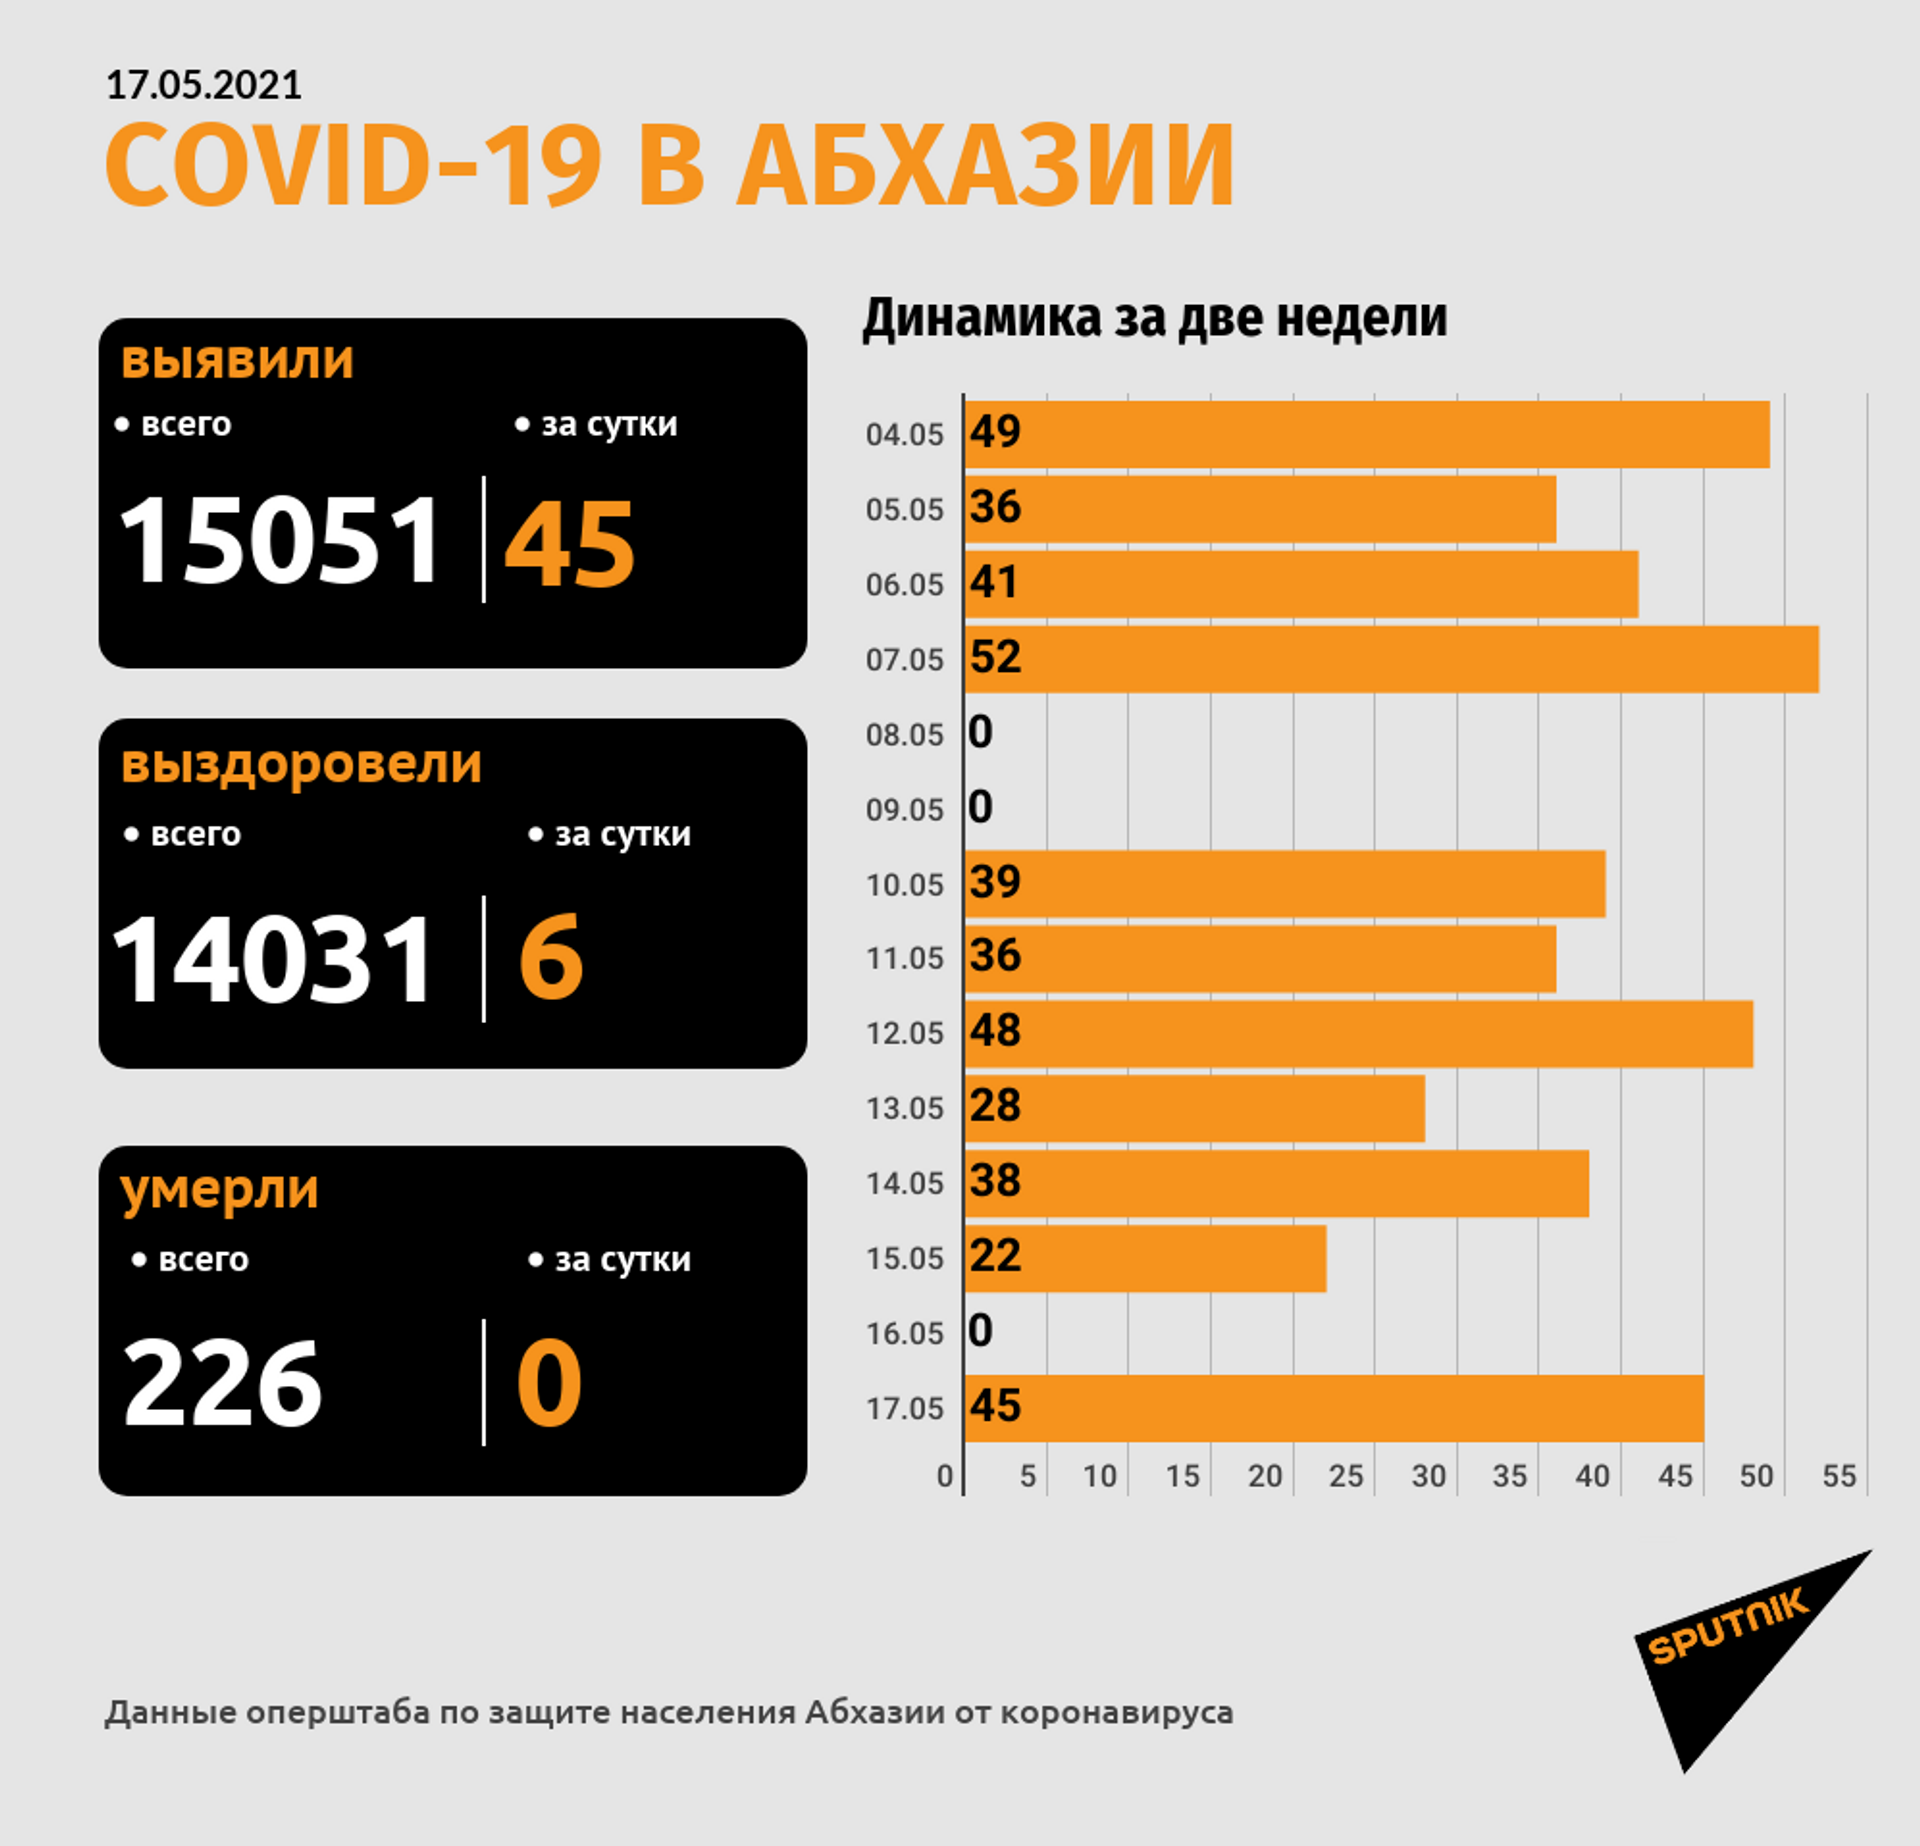 Еще 45 новых случаев COVID-19 подтверждено в Абхазии - Sputnik Абхазия, 1920, 17.05.2021